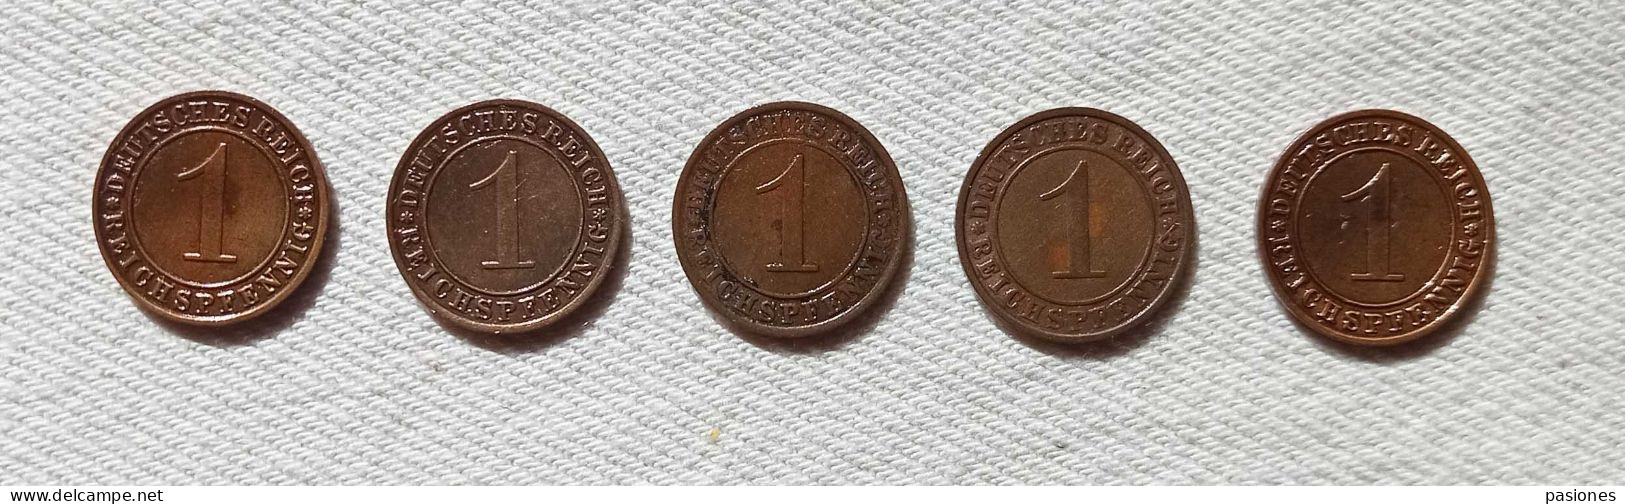 Germania Weimar  1 Reichspfennig 1929A-1930A-1931A-1932A-933A  Lotto Di 5 Monete - 1 Renten- & 1 Reichspfennig